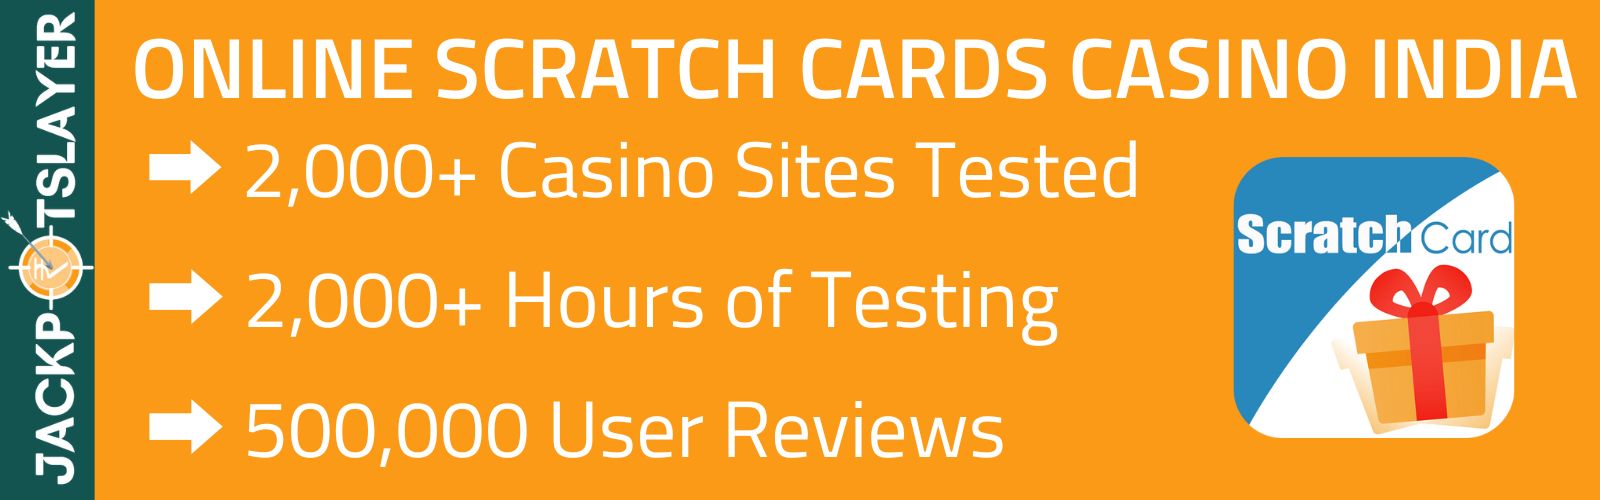 Scratch card casino